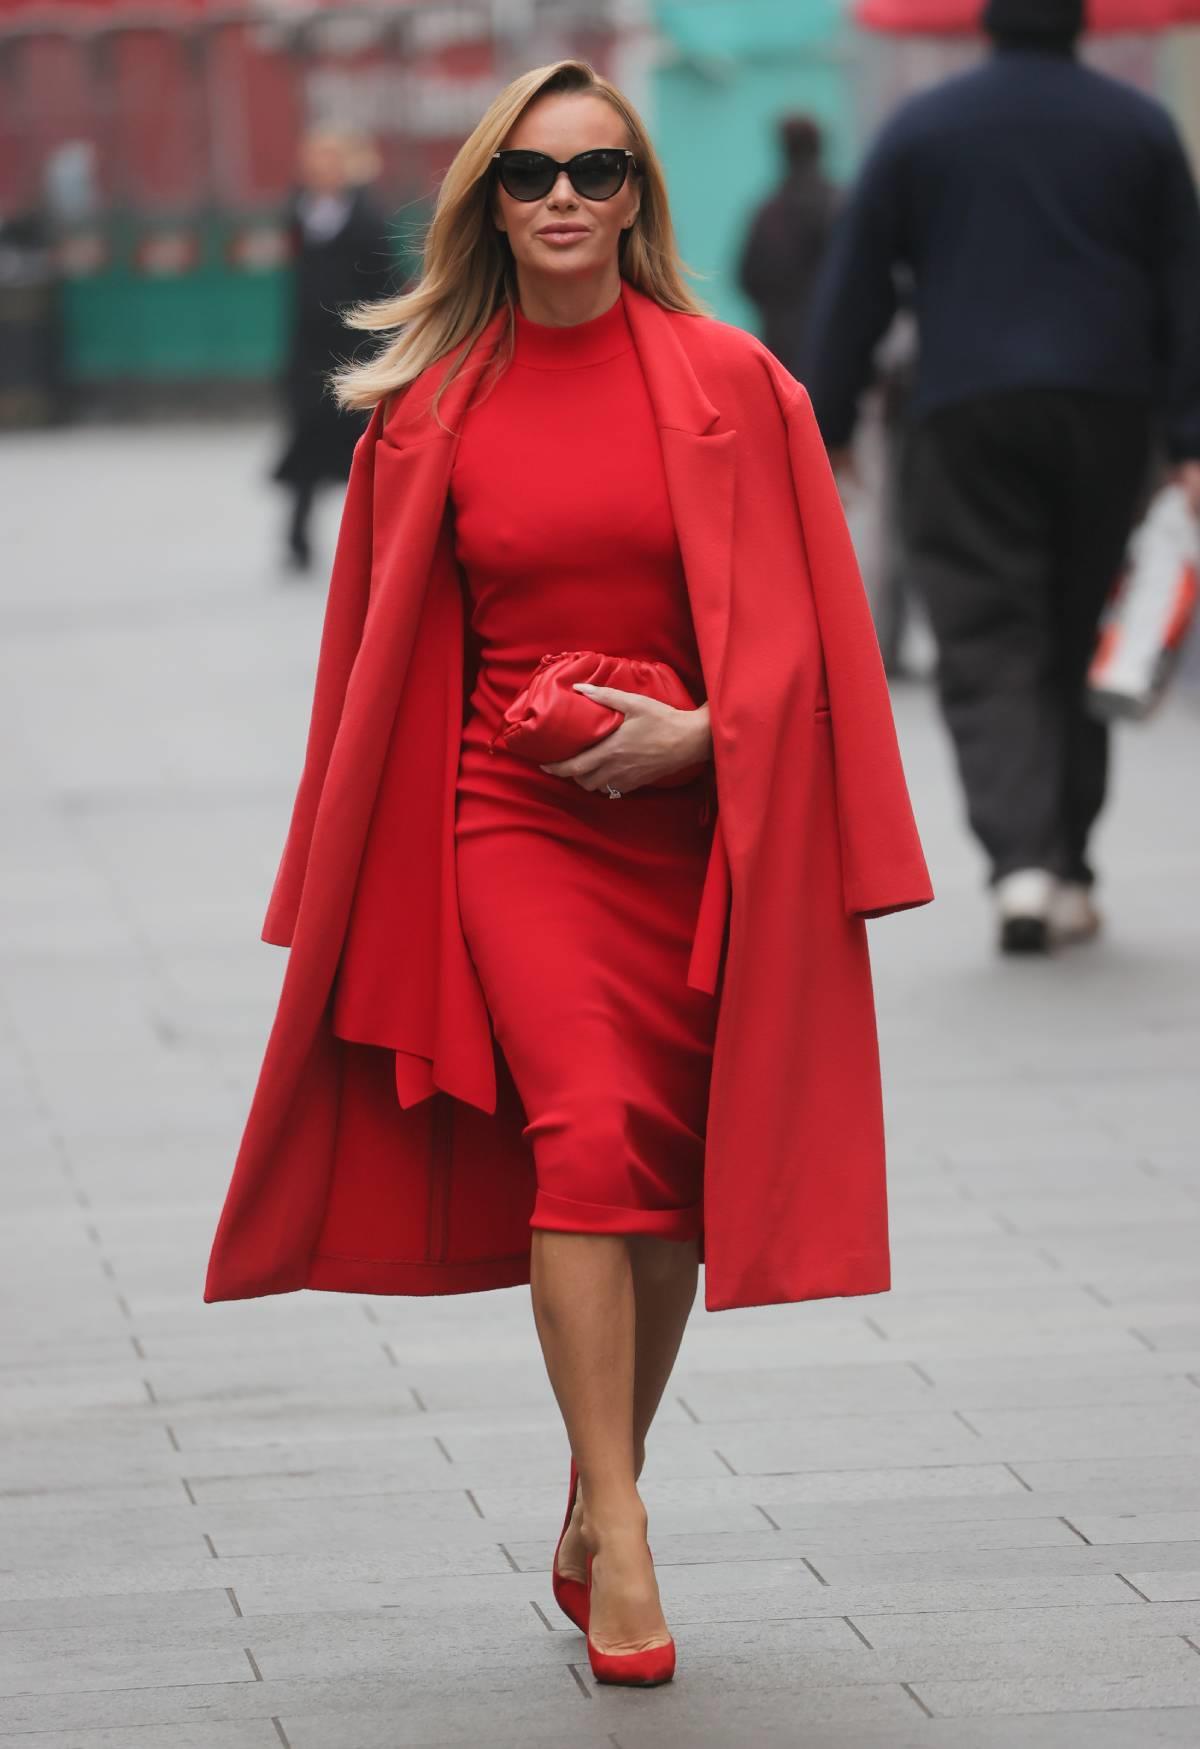 Cómo combinar un vestido rojo: bolso, zapatos, y otros complementos